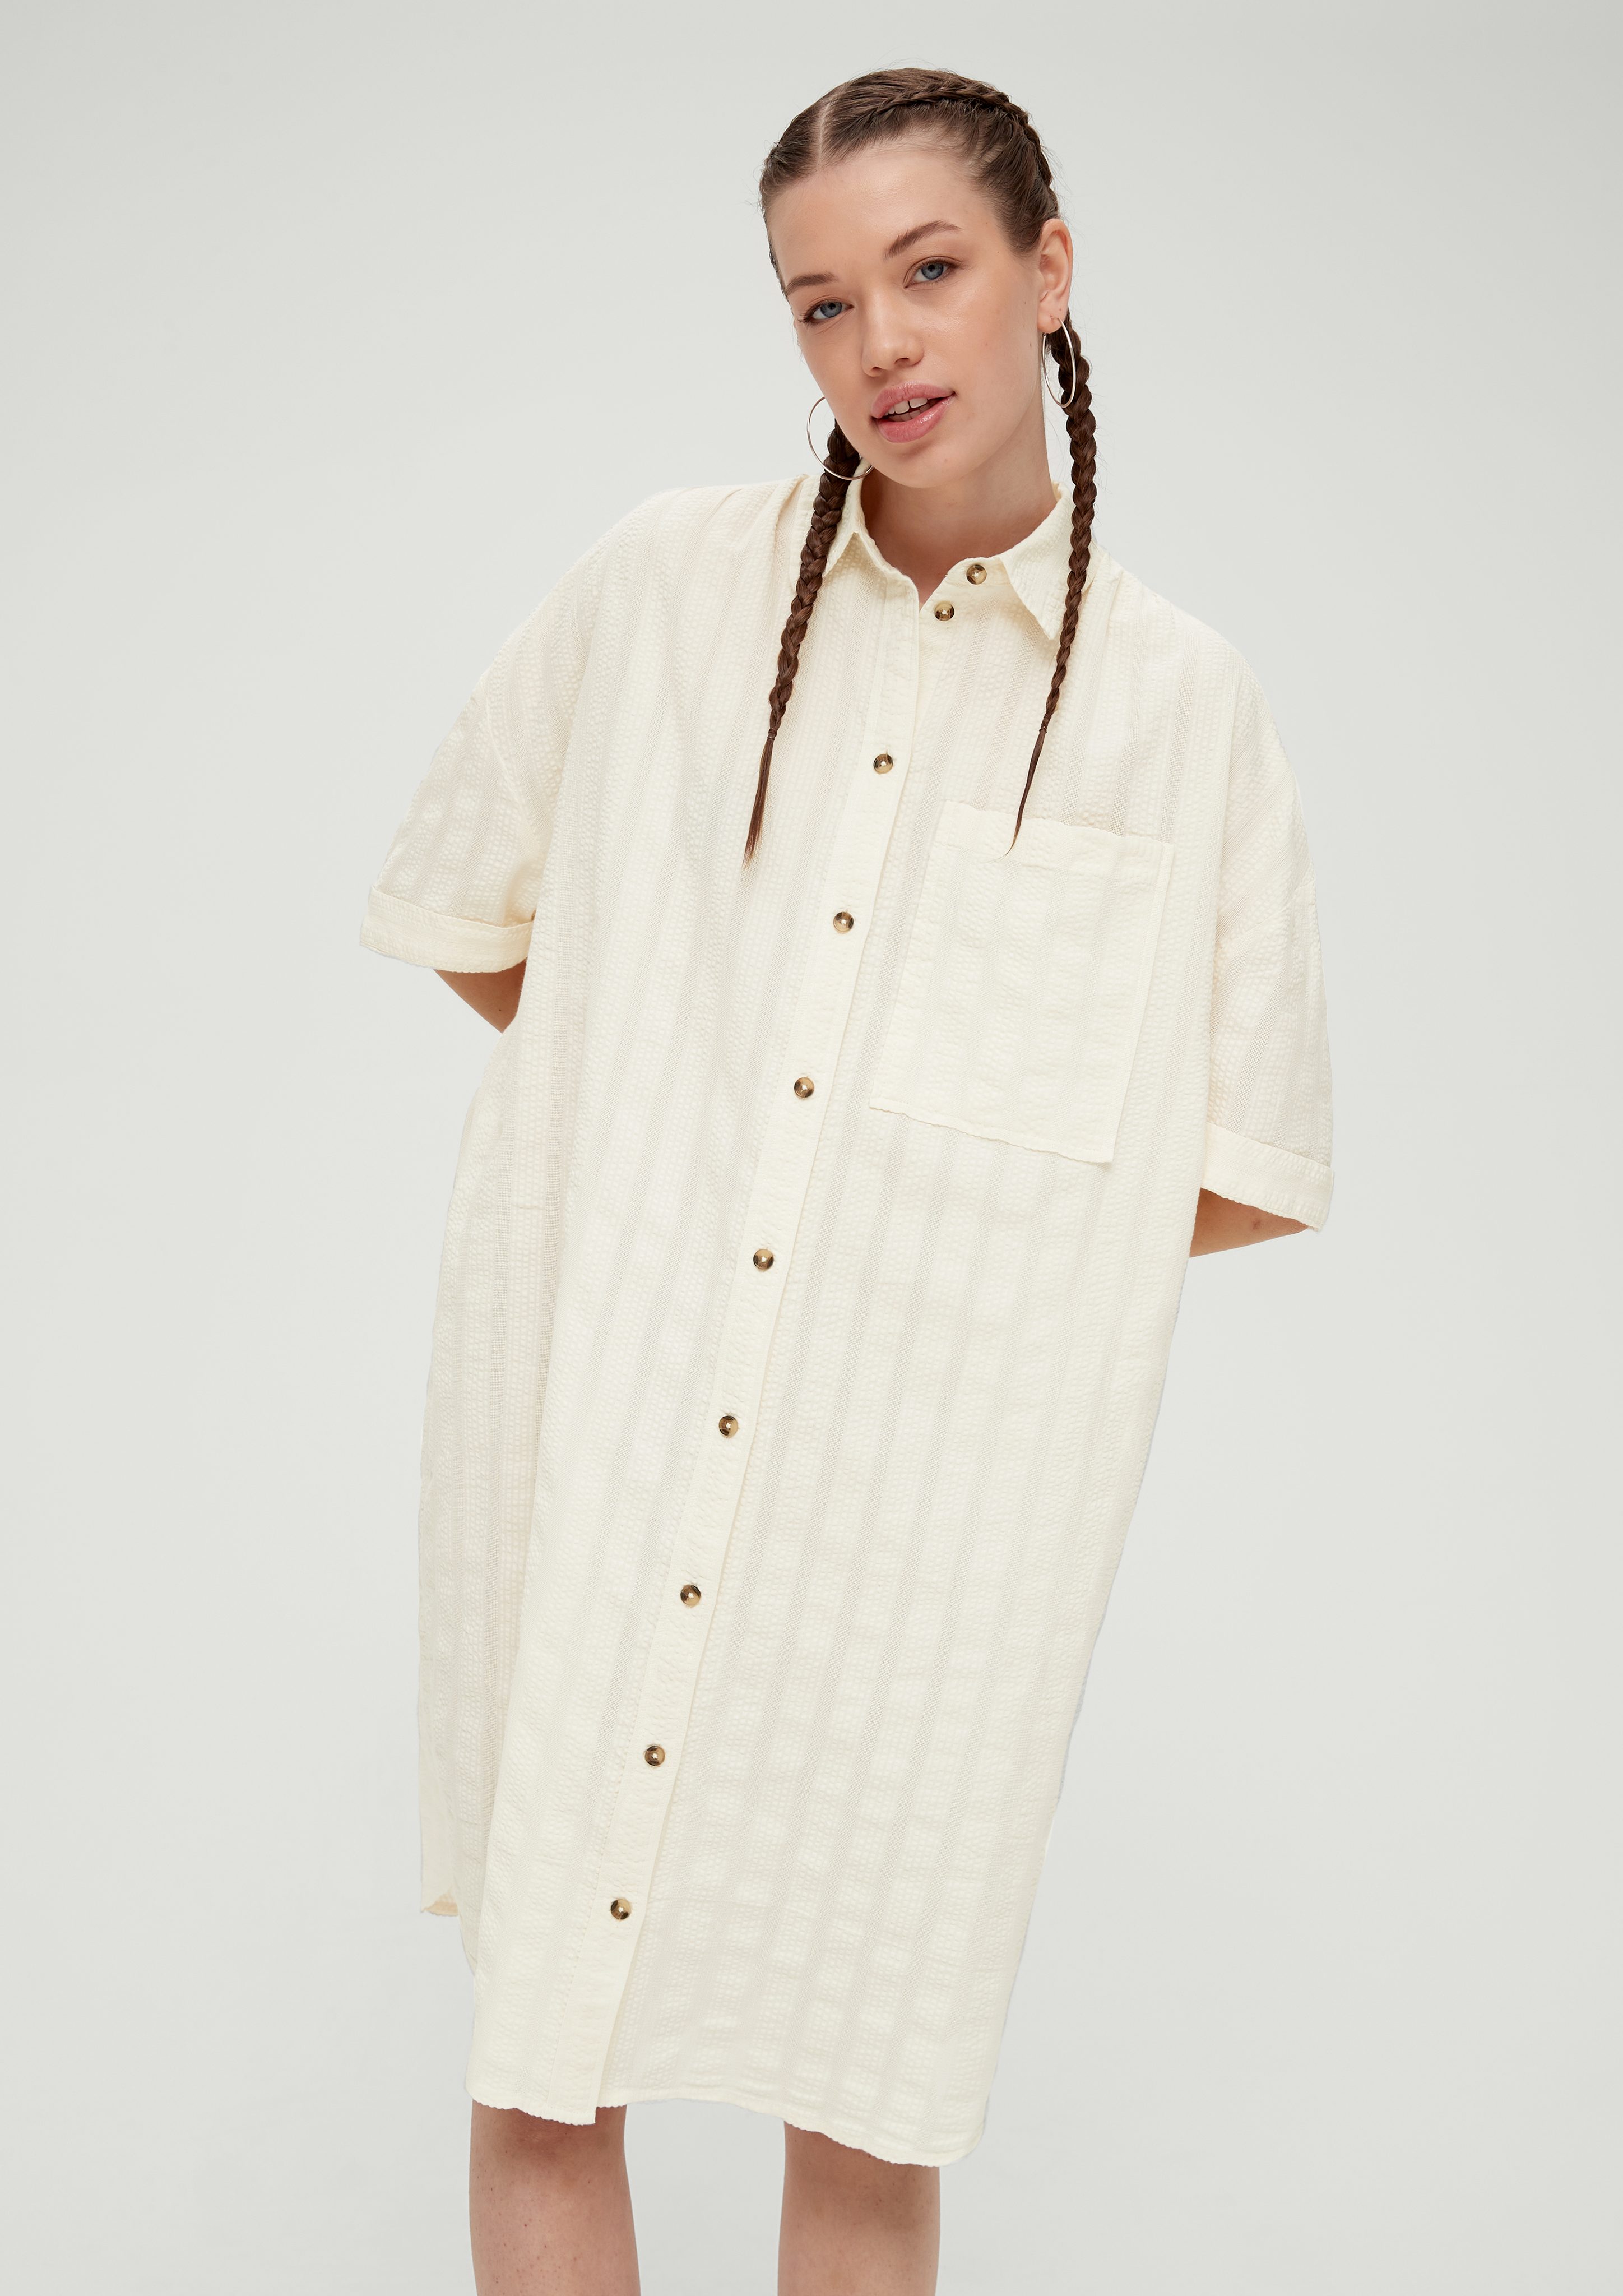 Blusenkleid aus QS sand helles Baumwolle Minikleid